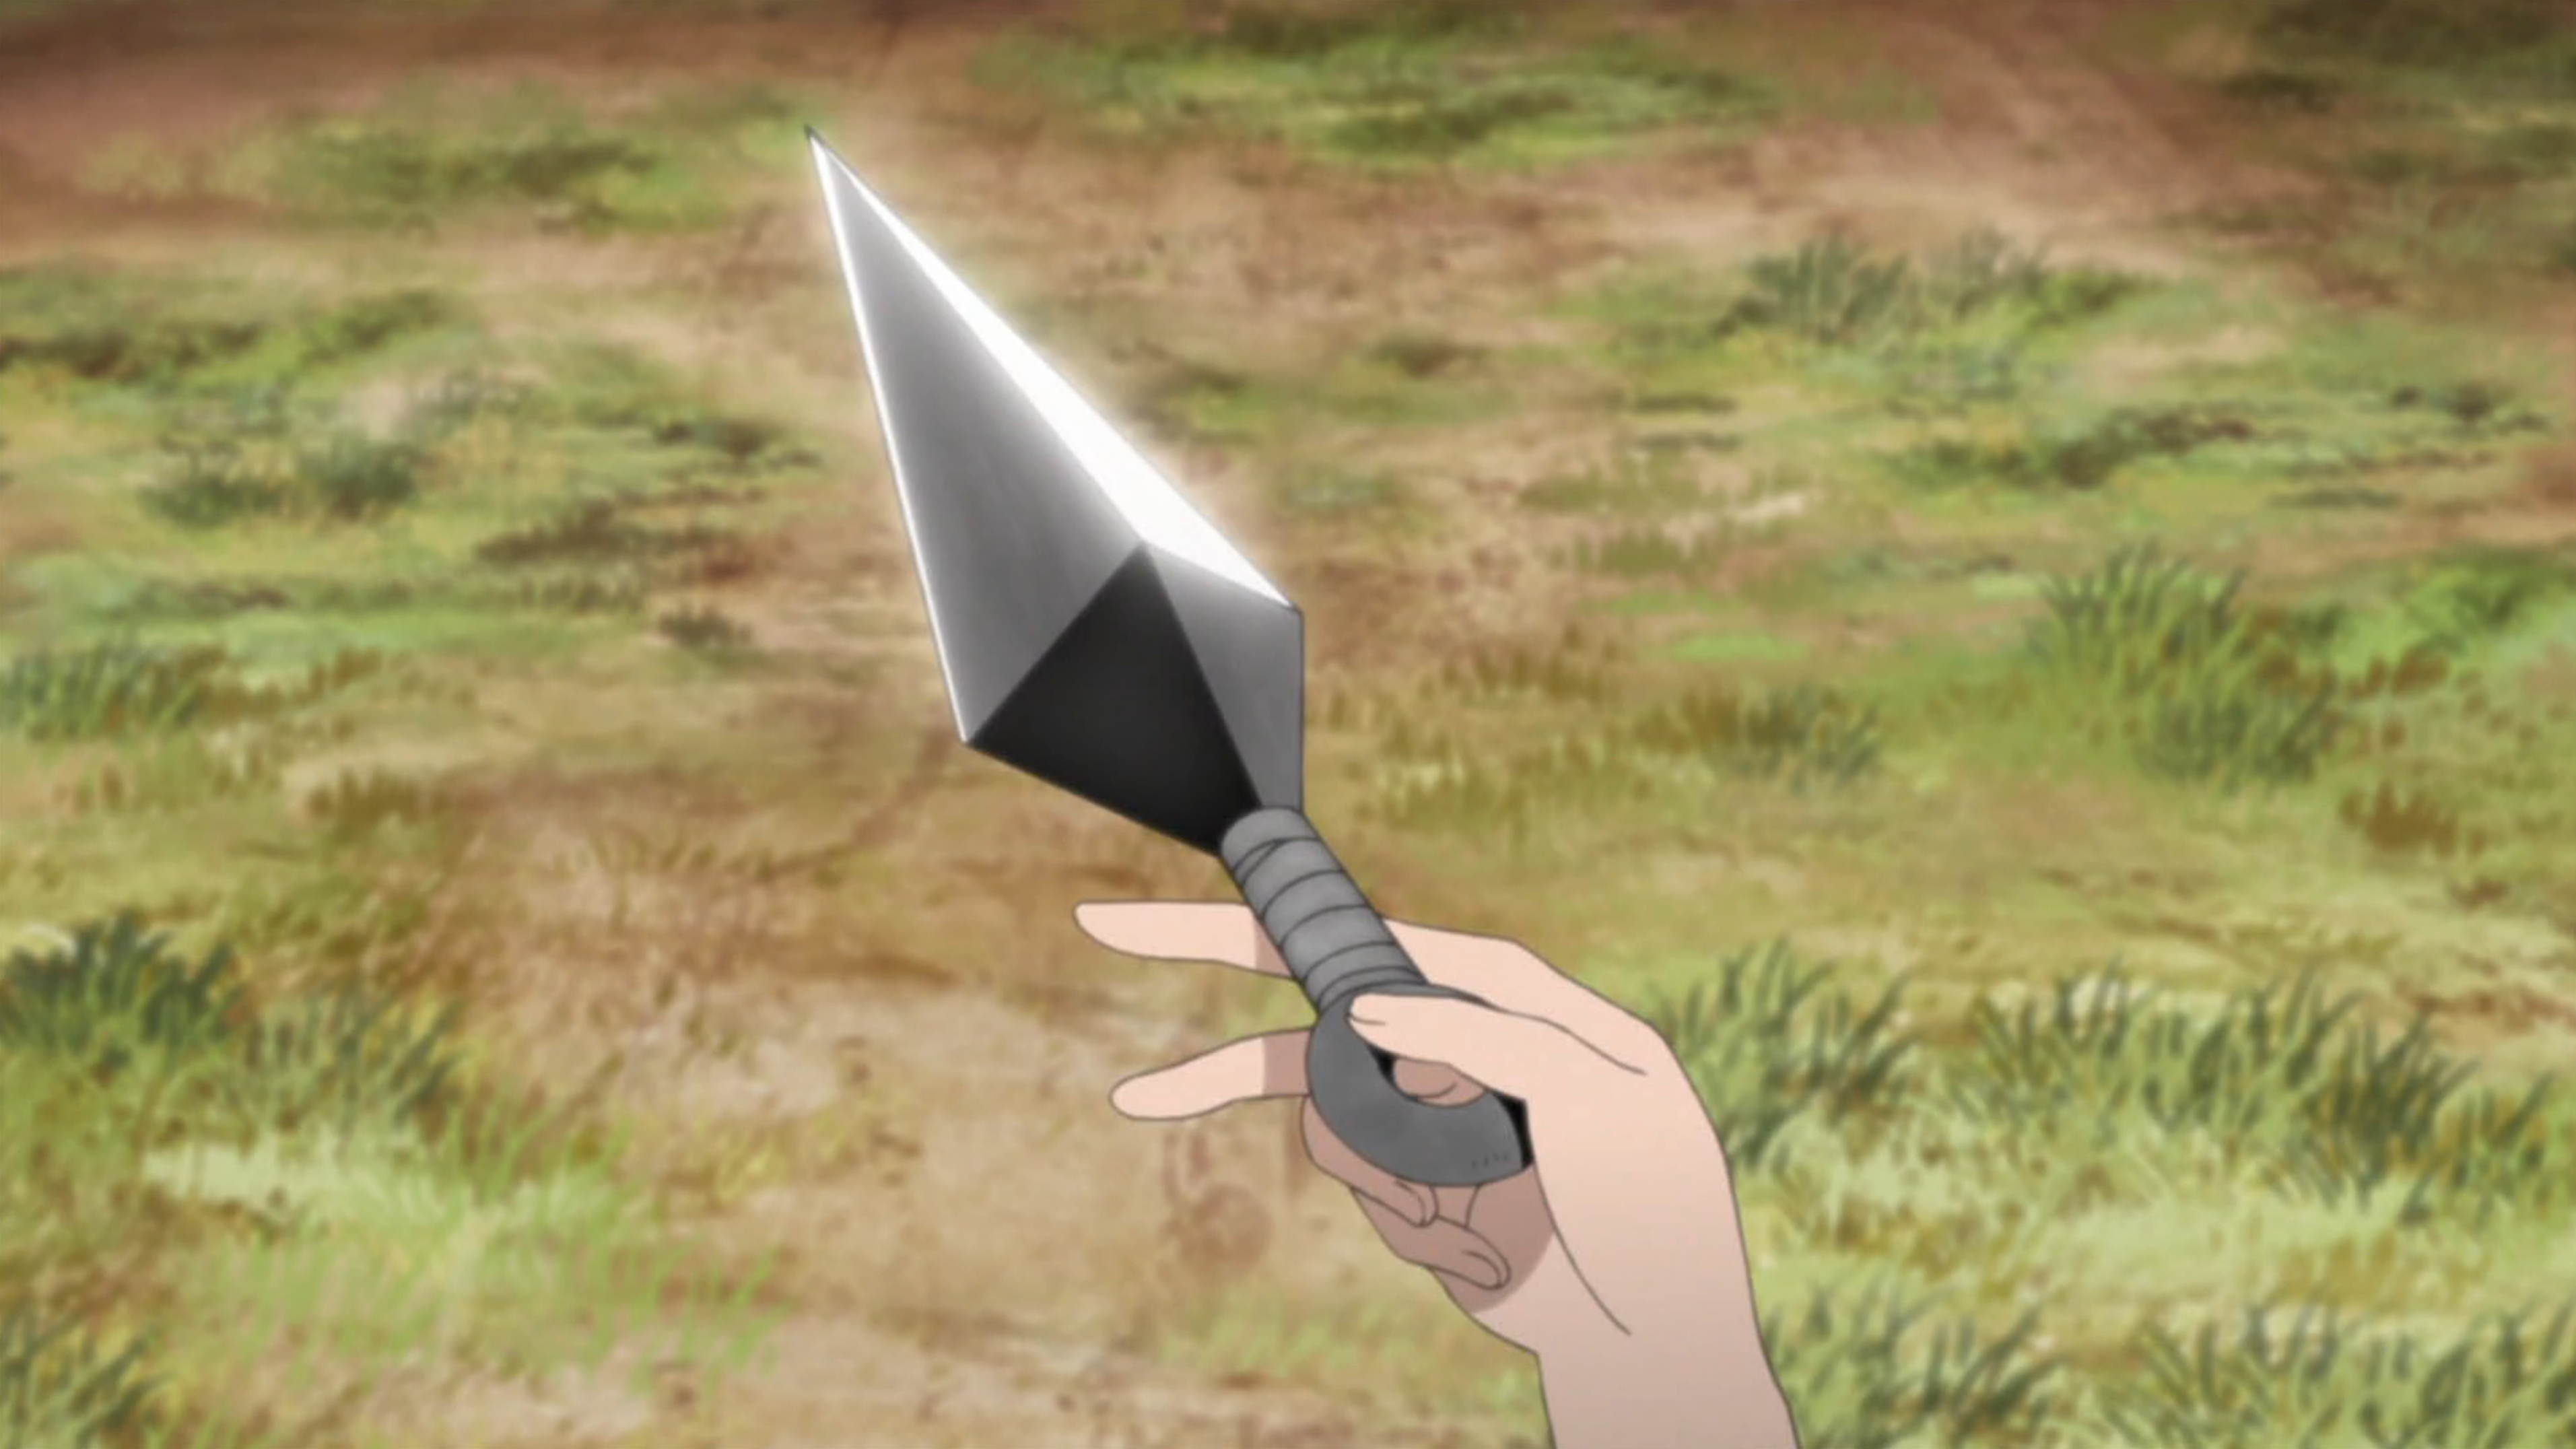 Naruto Metal Kunai knife